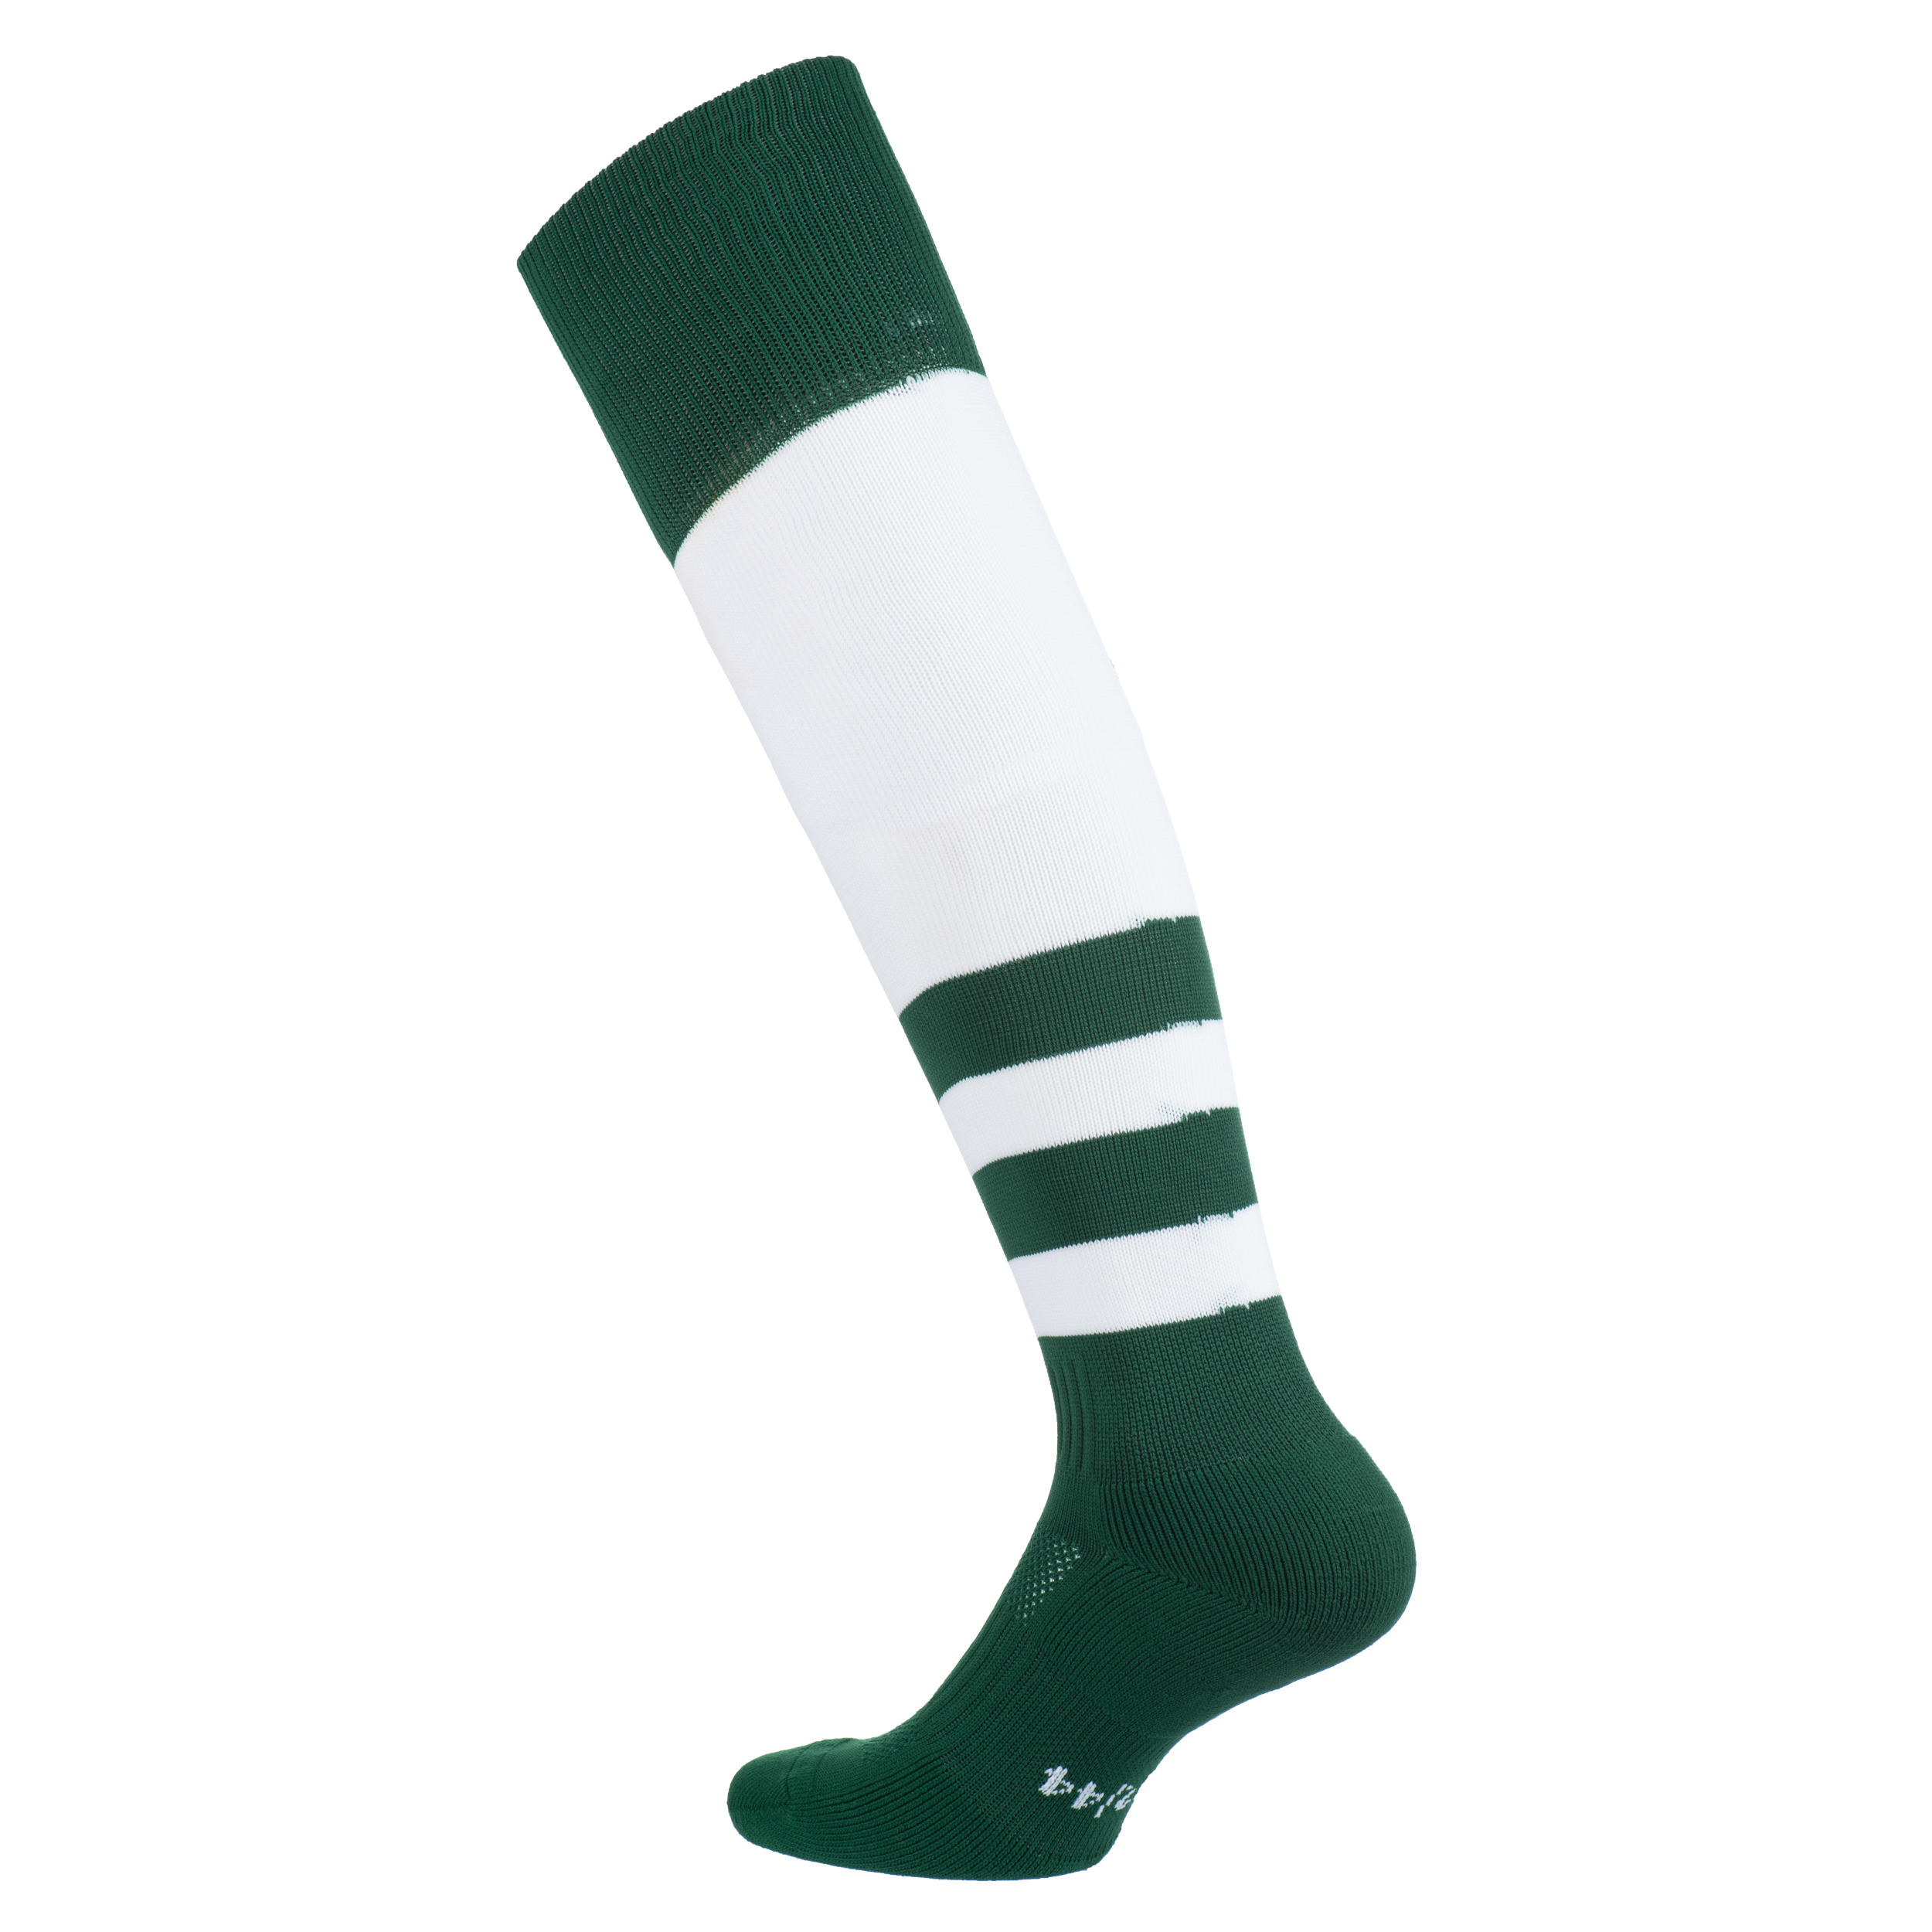 Men's/Women's High Rugby Socks R500 - Green/White 2/5